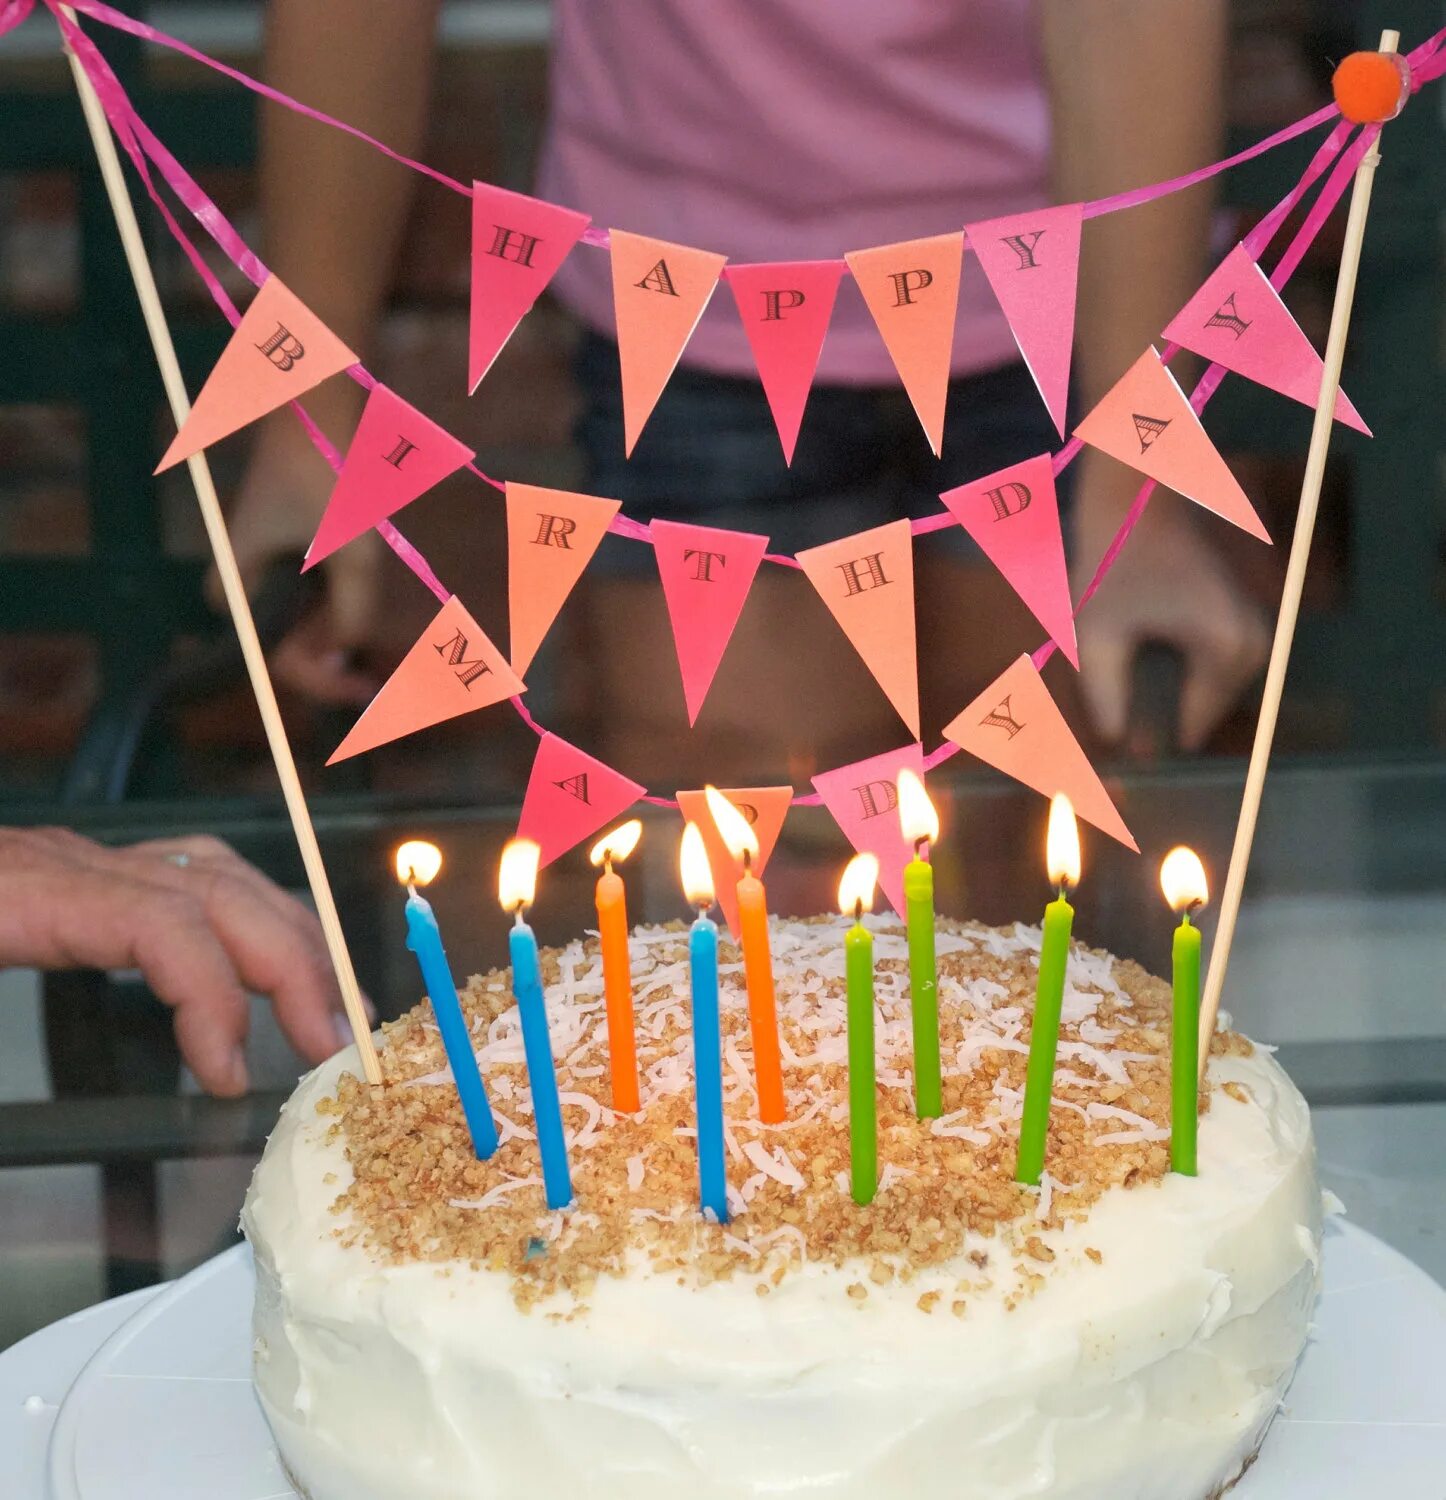 Что сделать на др своими руками. Идеи на день рождения. Креативные идеи на день рождения. Интересные идеи на день рождения. Украшение торта на день рождения.